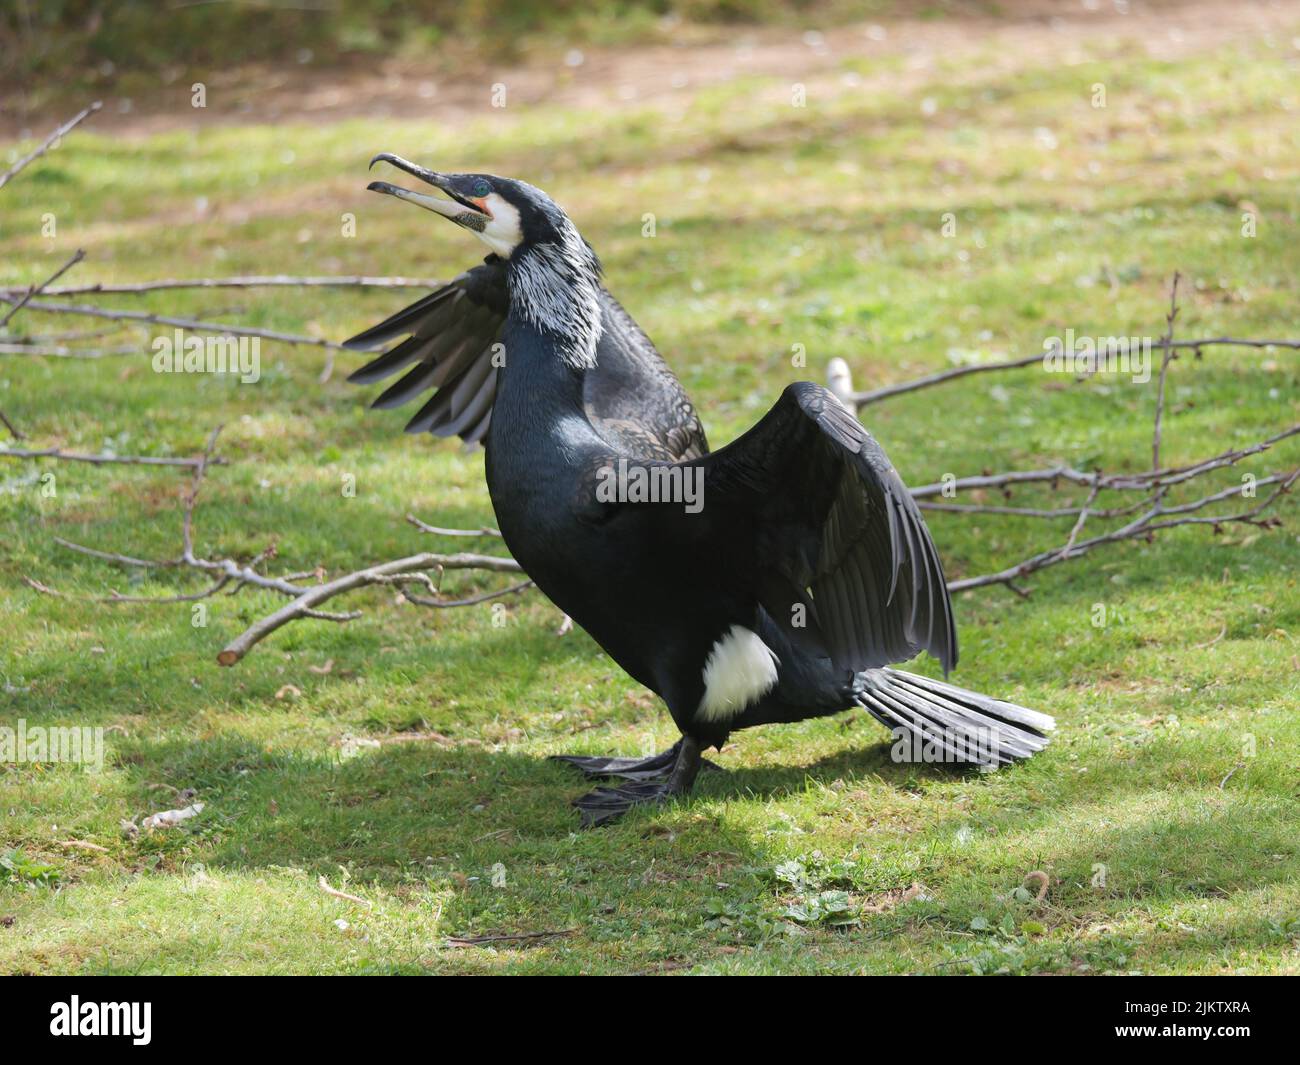 Un gros plan d'un Cormorant balançant ses ailes, debout sur l'herbe Banque D'Images